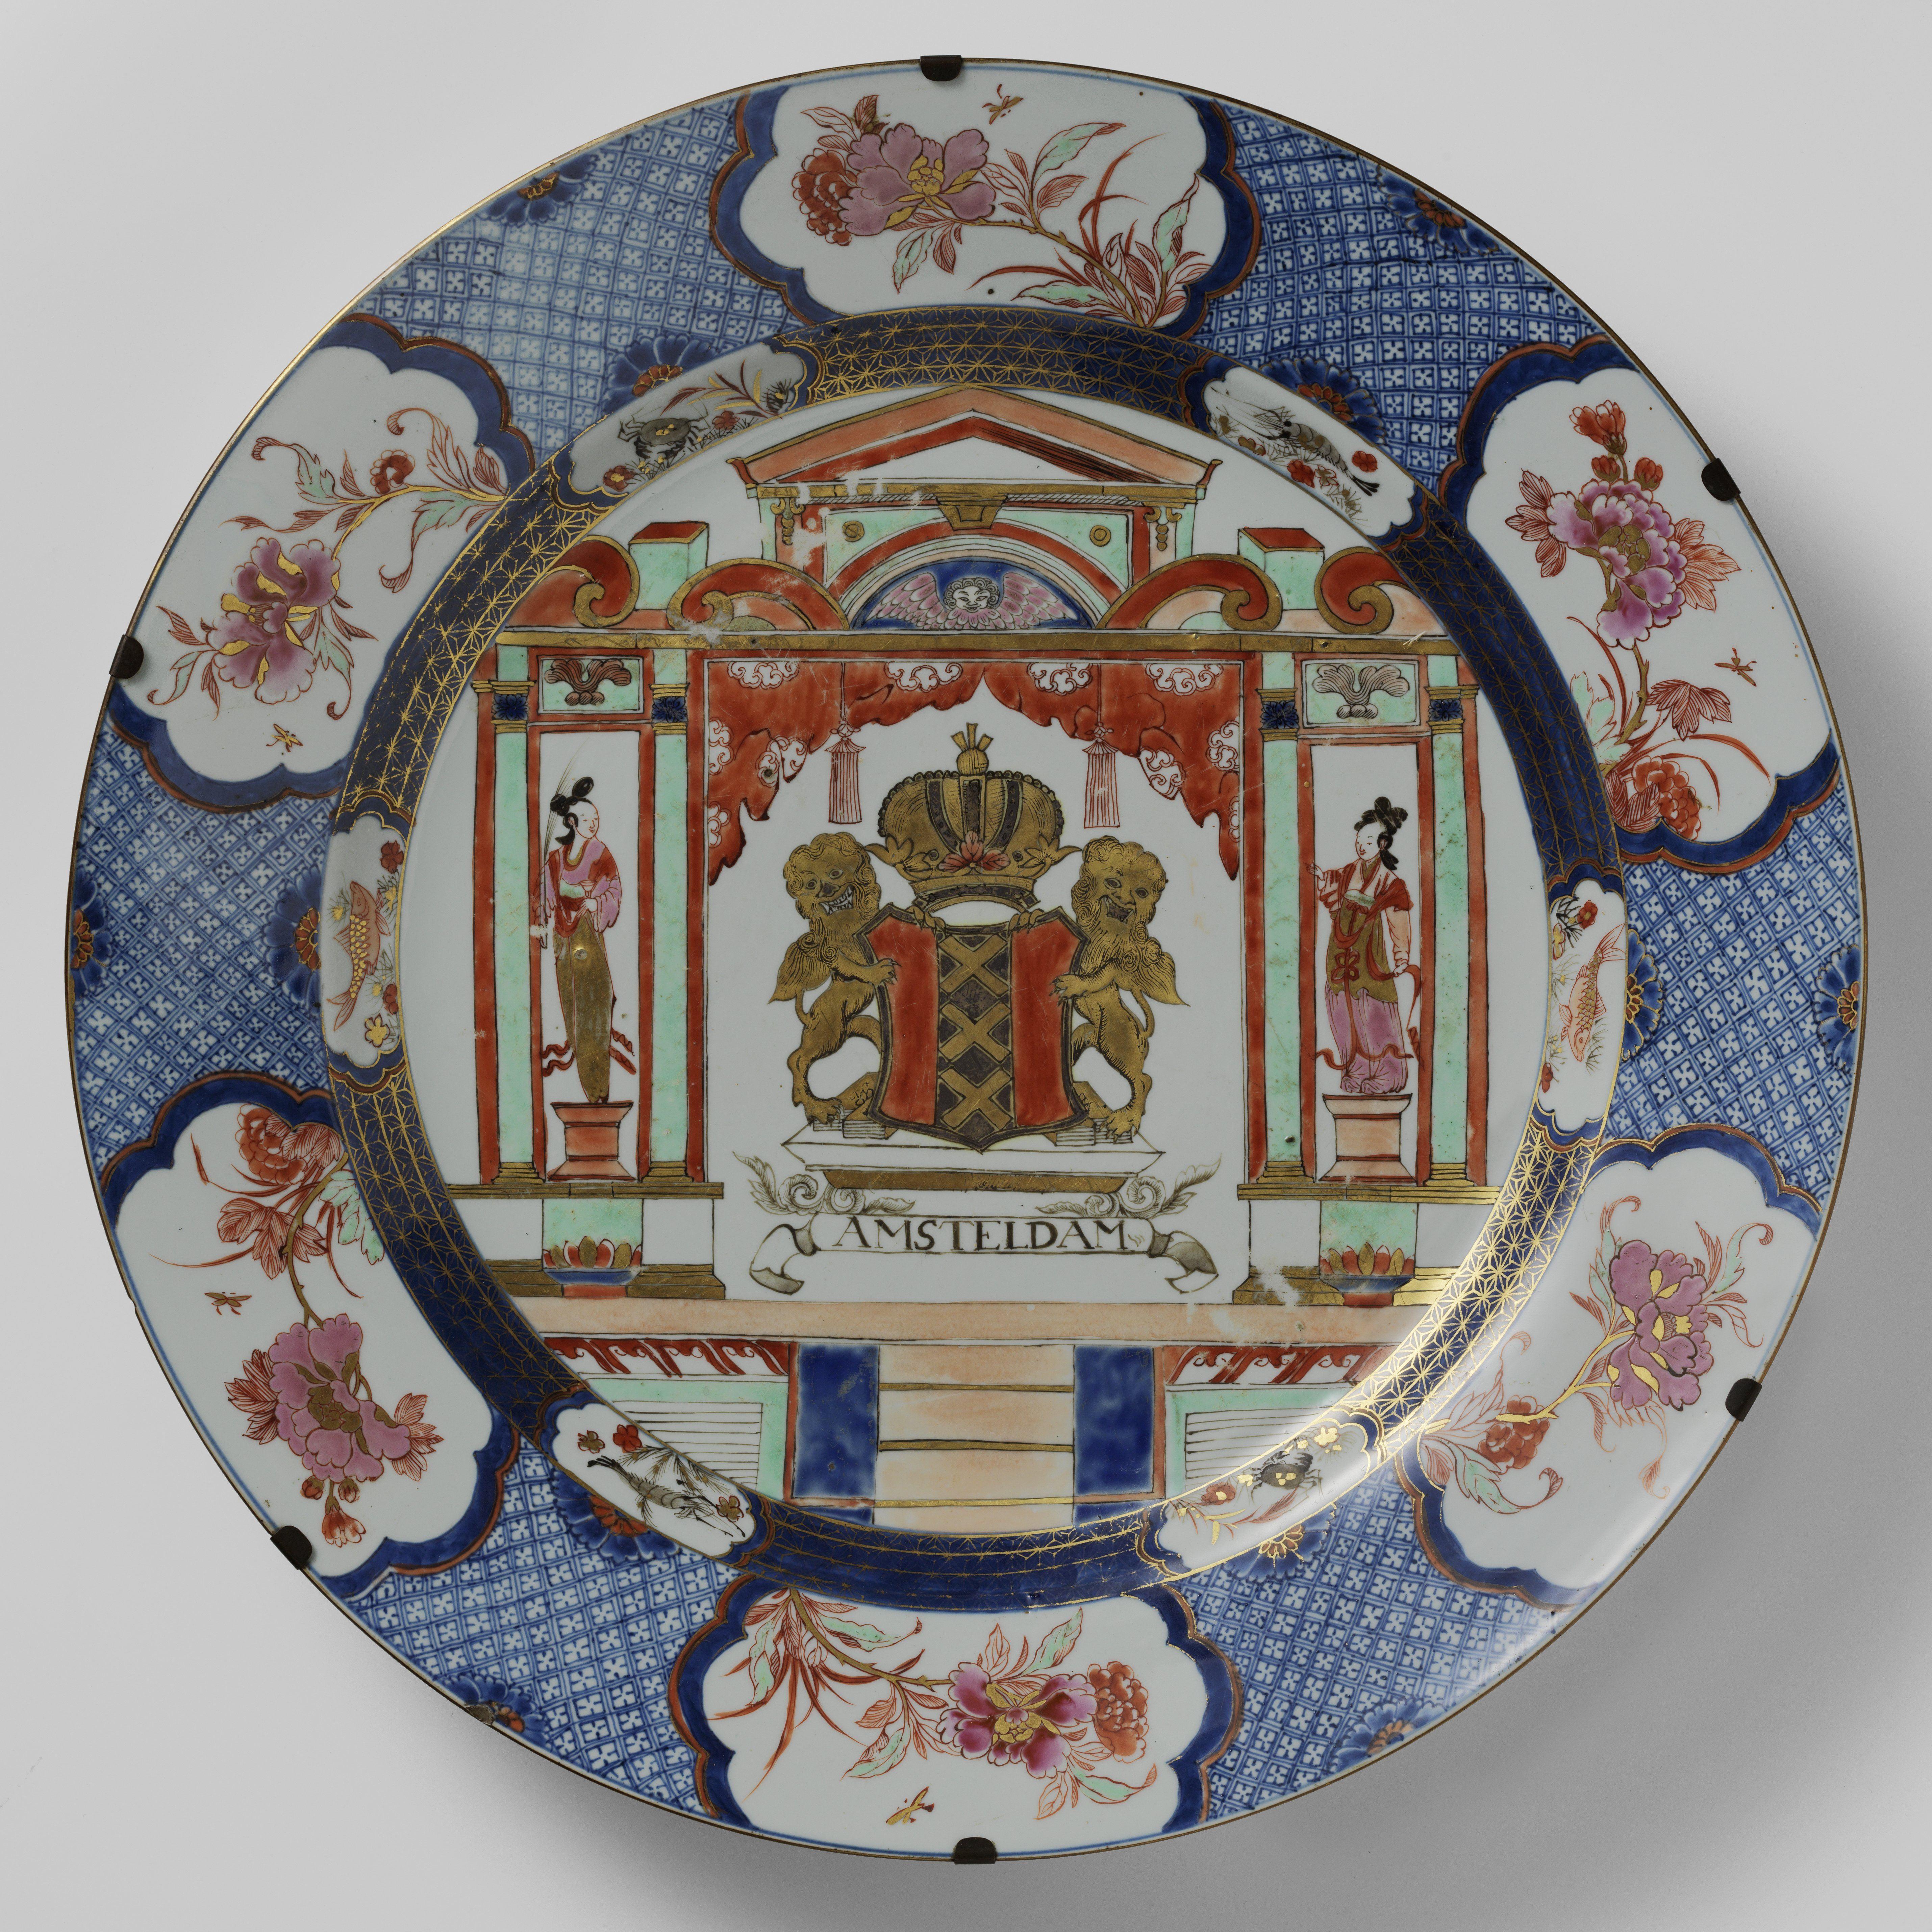 Rarissime et grand chargeur en porcelaine d'exportation chinoise de la famille rose avec les armoiries d'Amsterdam

Période Qianlong, vers 1720-1725

Diam. 54 cm

Deux lions dorés tiennent les armoiries d'Amsterdam au centre du plat, avec une